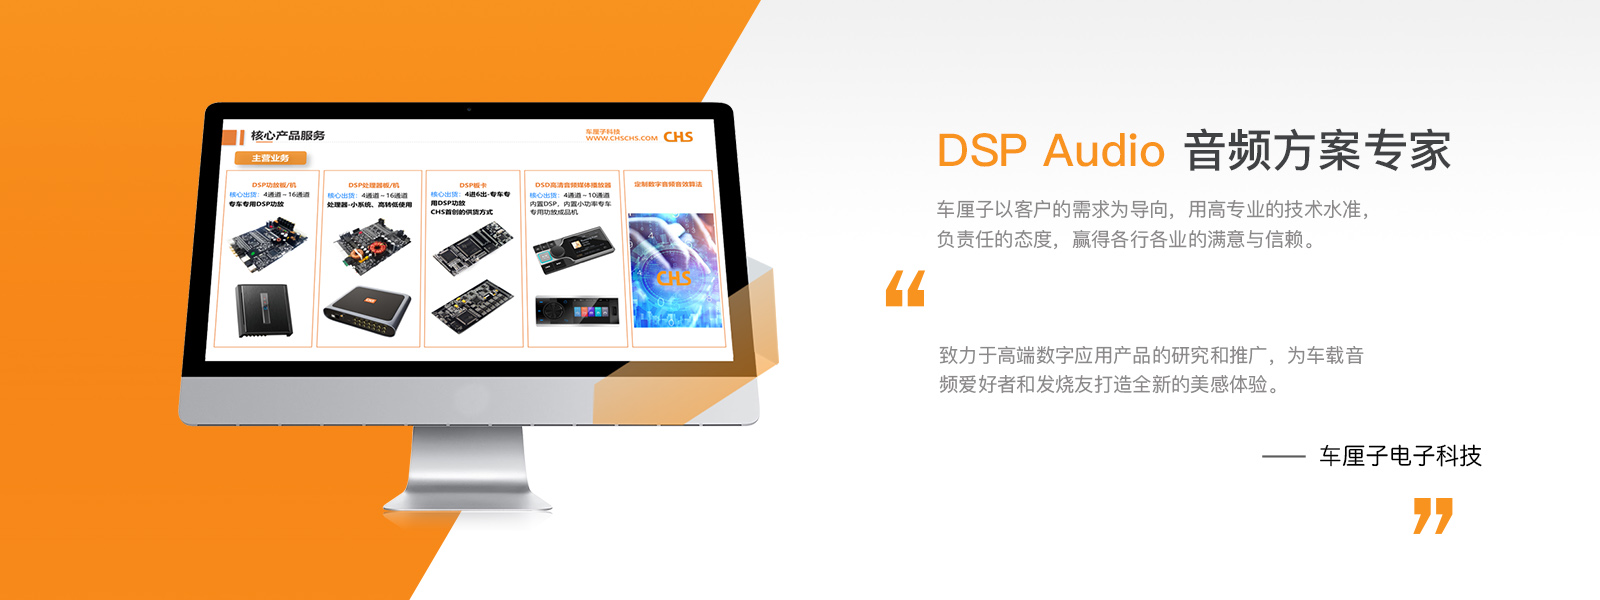 DSP Audio 音频方案专家